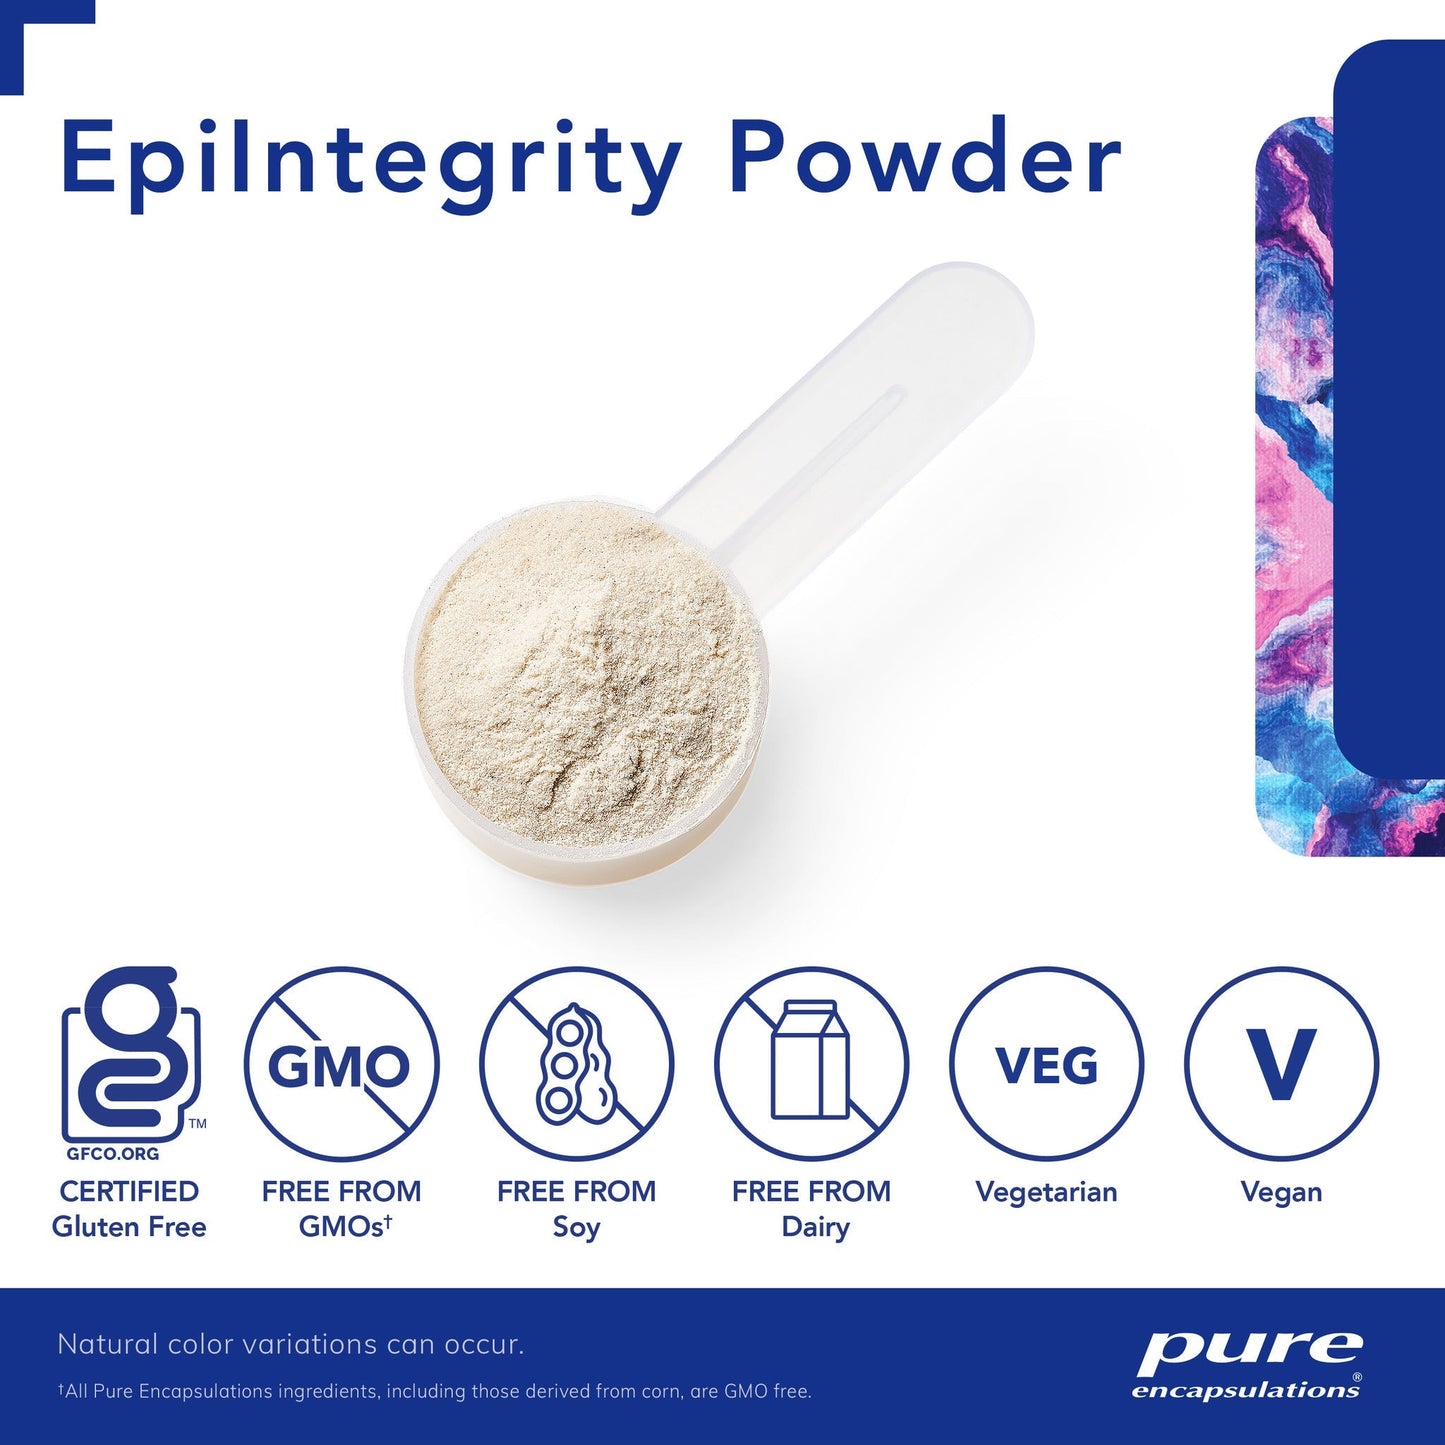 Epi-Integrity Powder